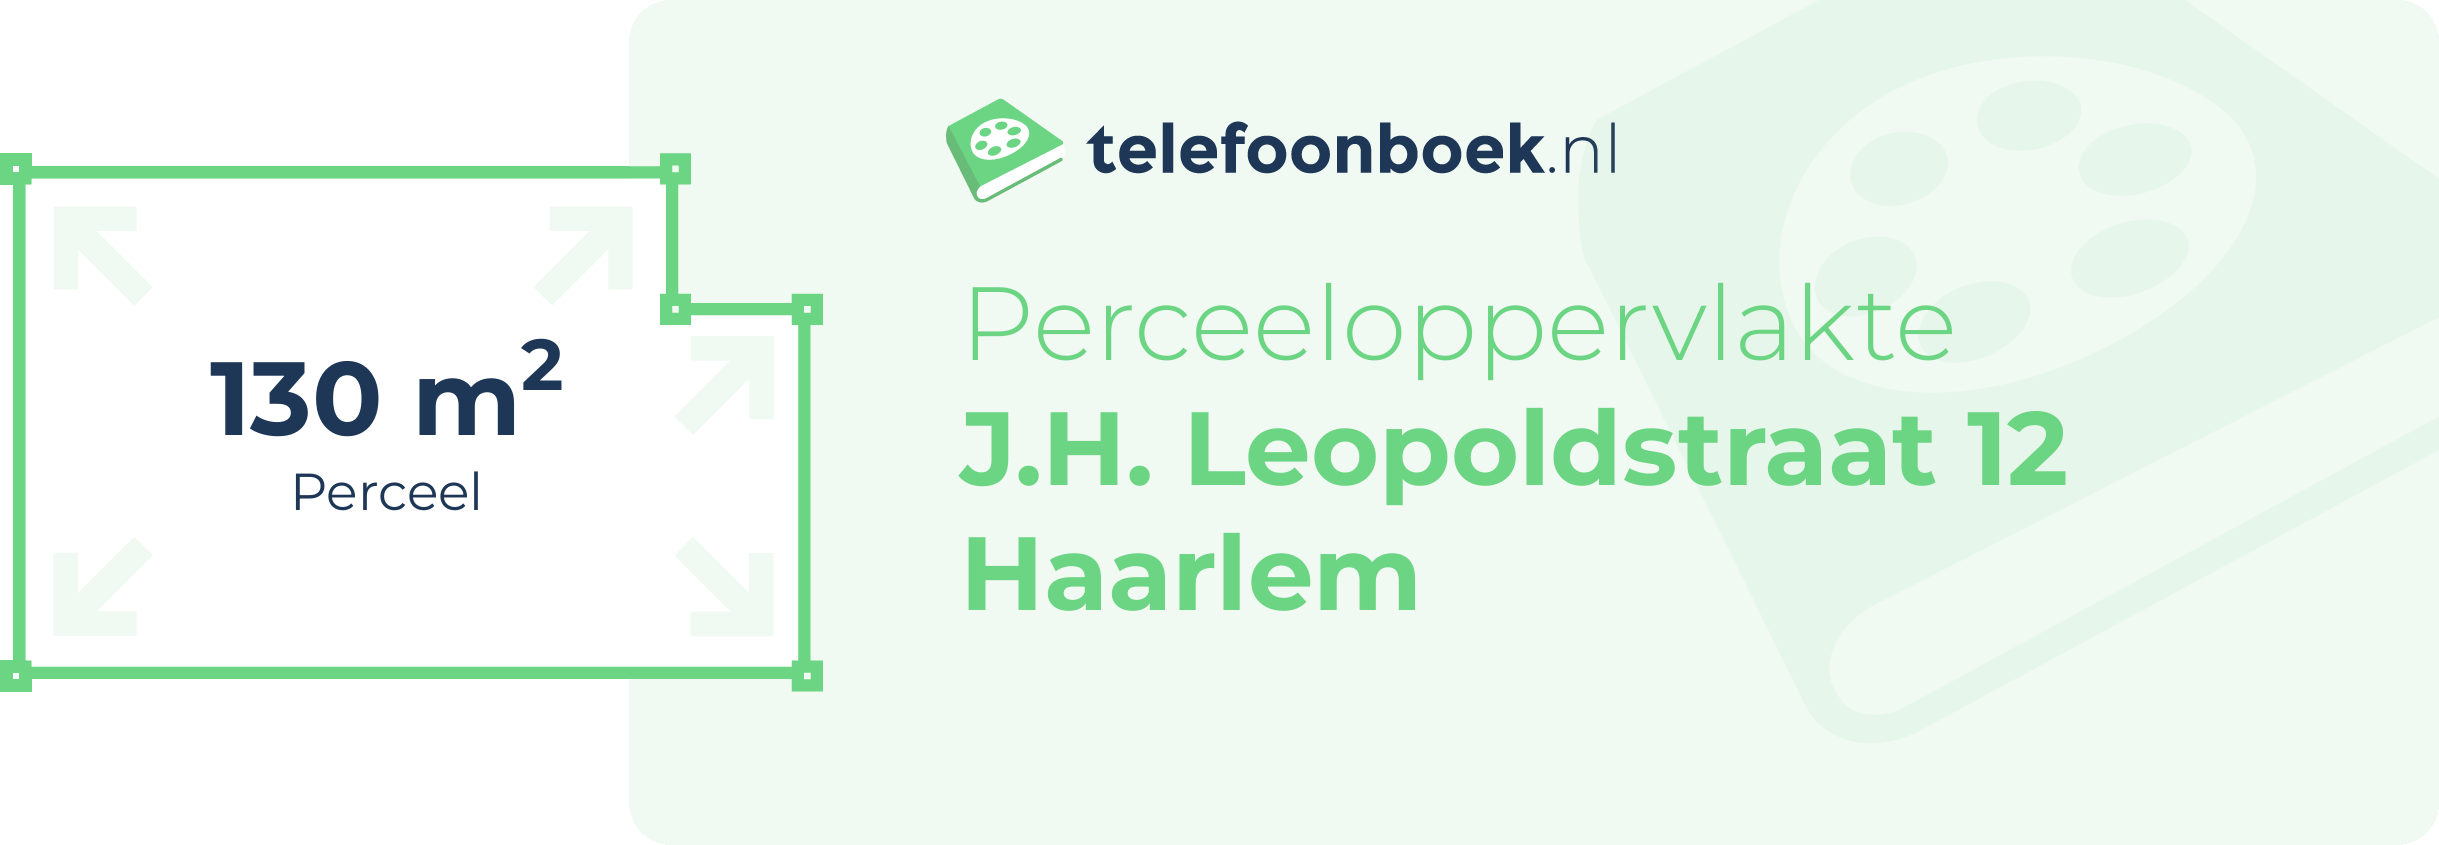 Perceeloppervlakte J.H. Leopoldstraat 12 Haarlem